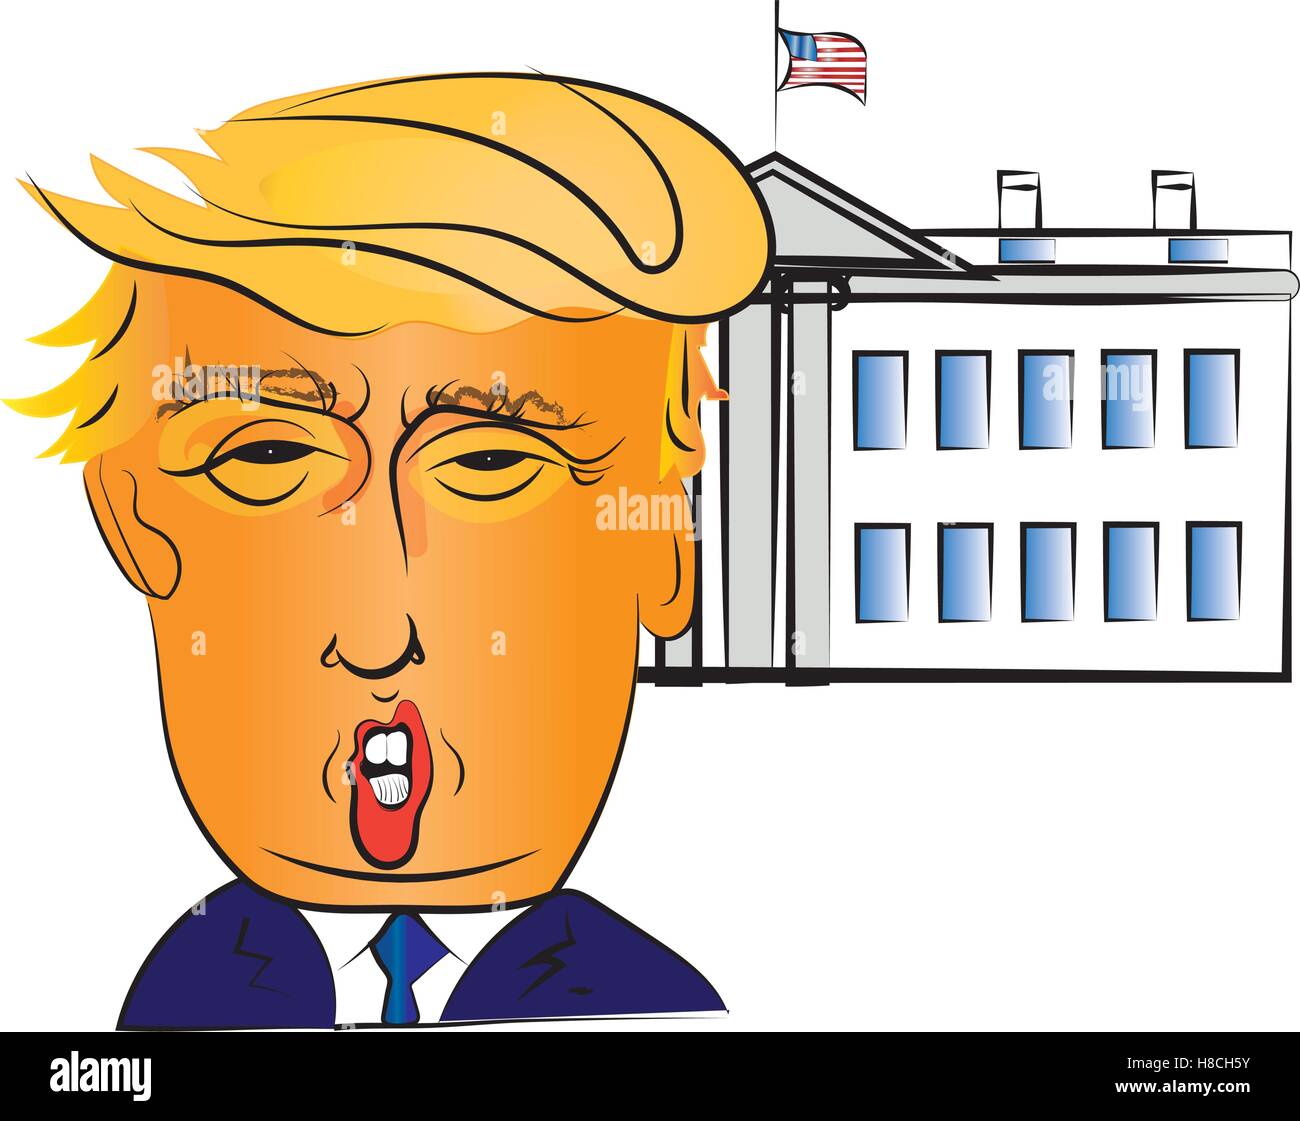 El retrato del personaje de Donald Trump, el 45º presidente de los Estados Unidos, con el edificio de la Casa Blanca en segundo plano. Ilustración del Vector